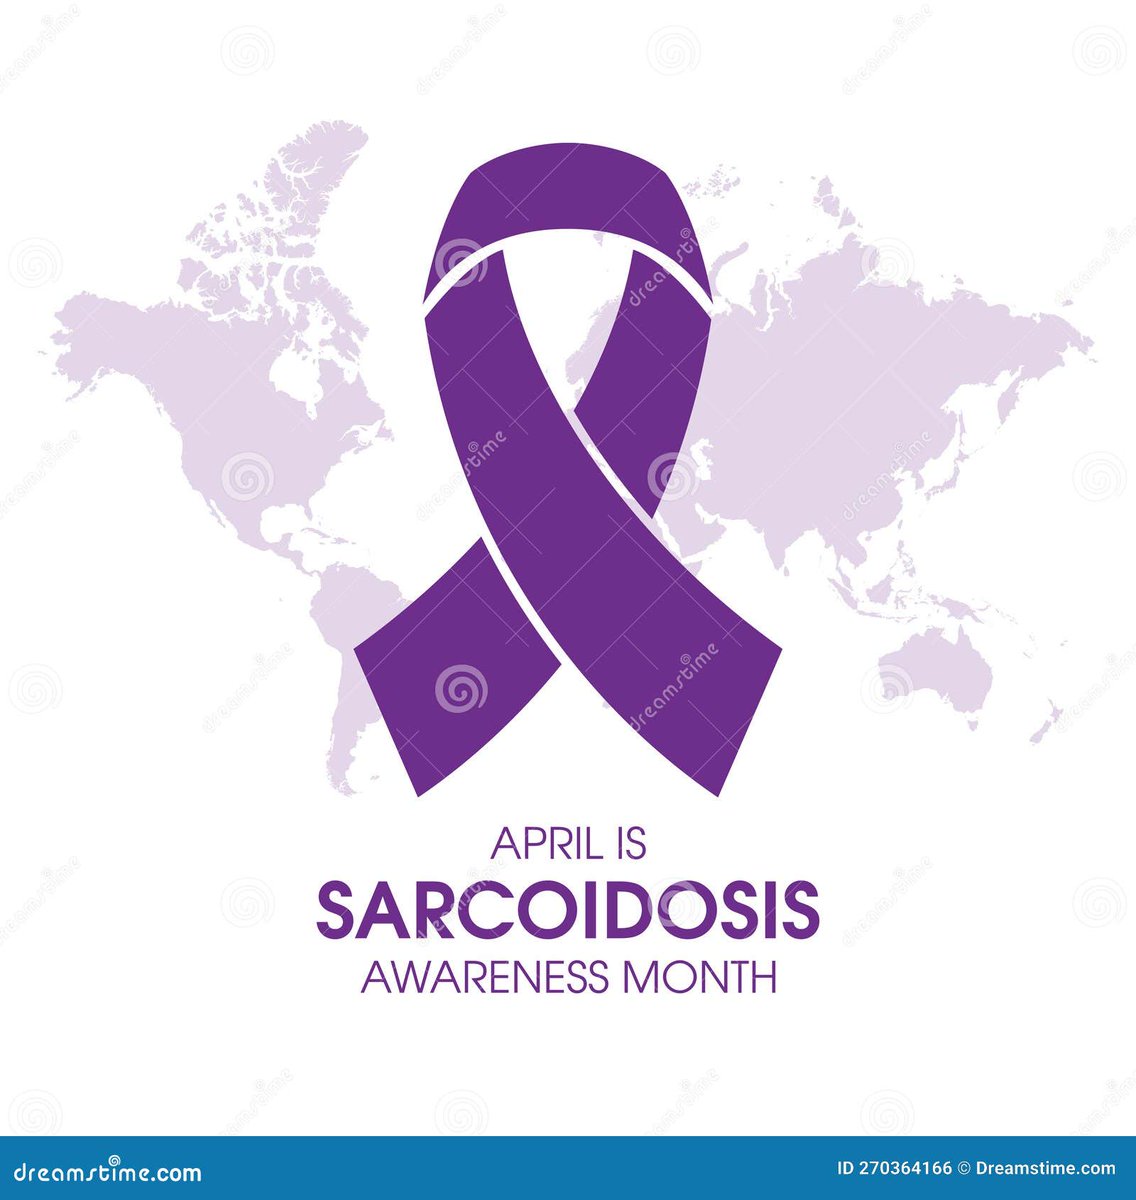 #Sarcoidosis #sarcoidosisawareness